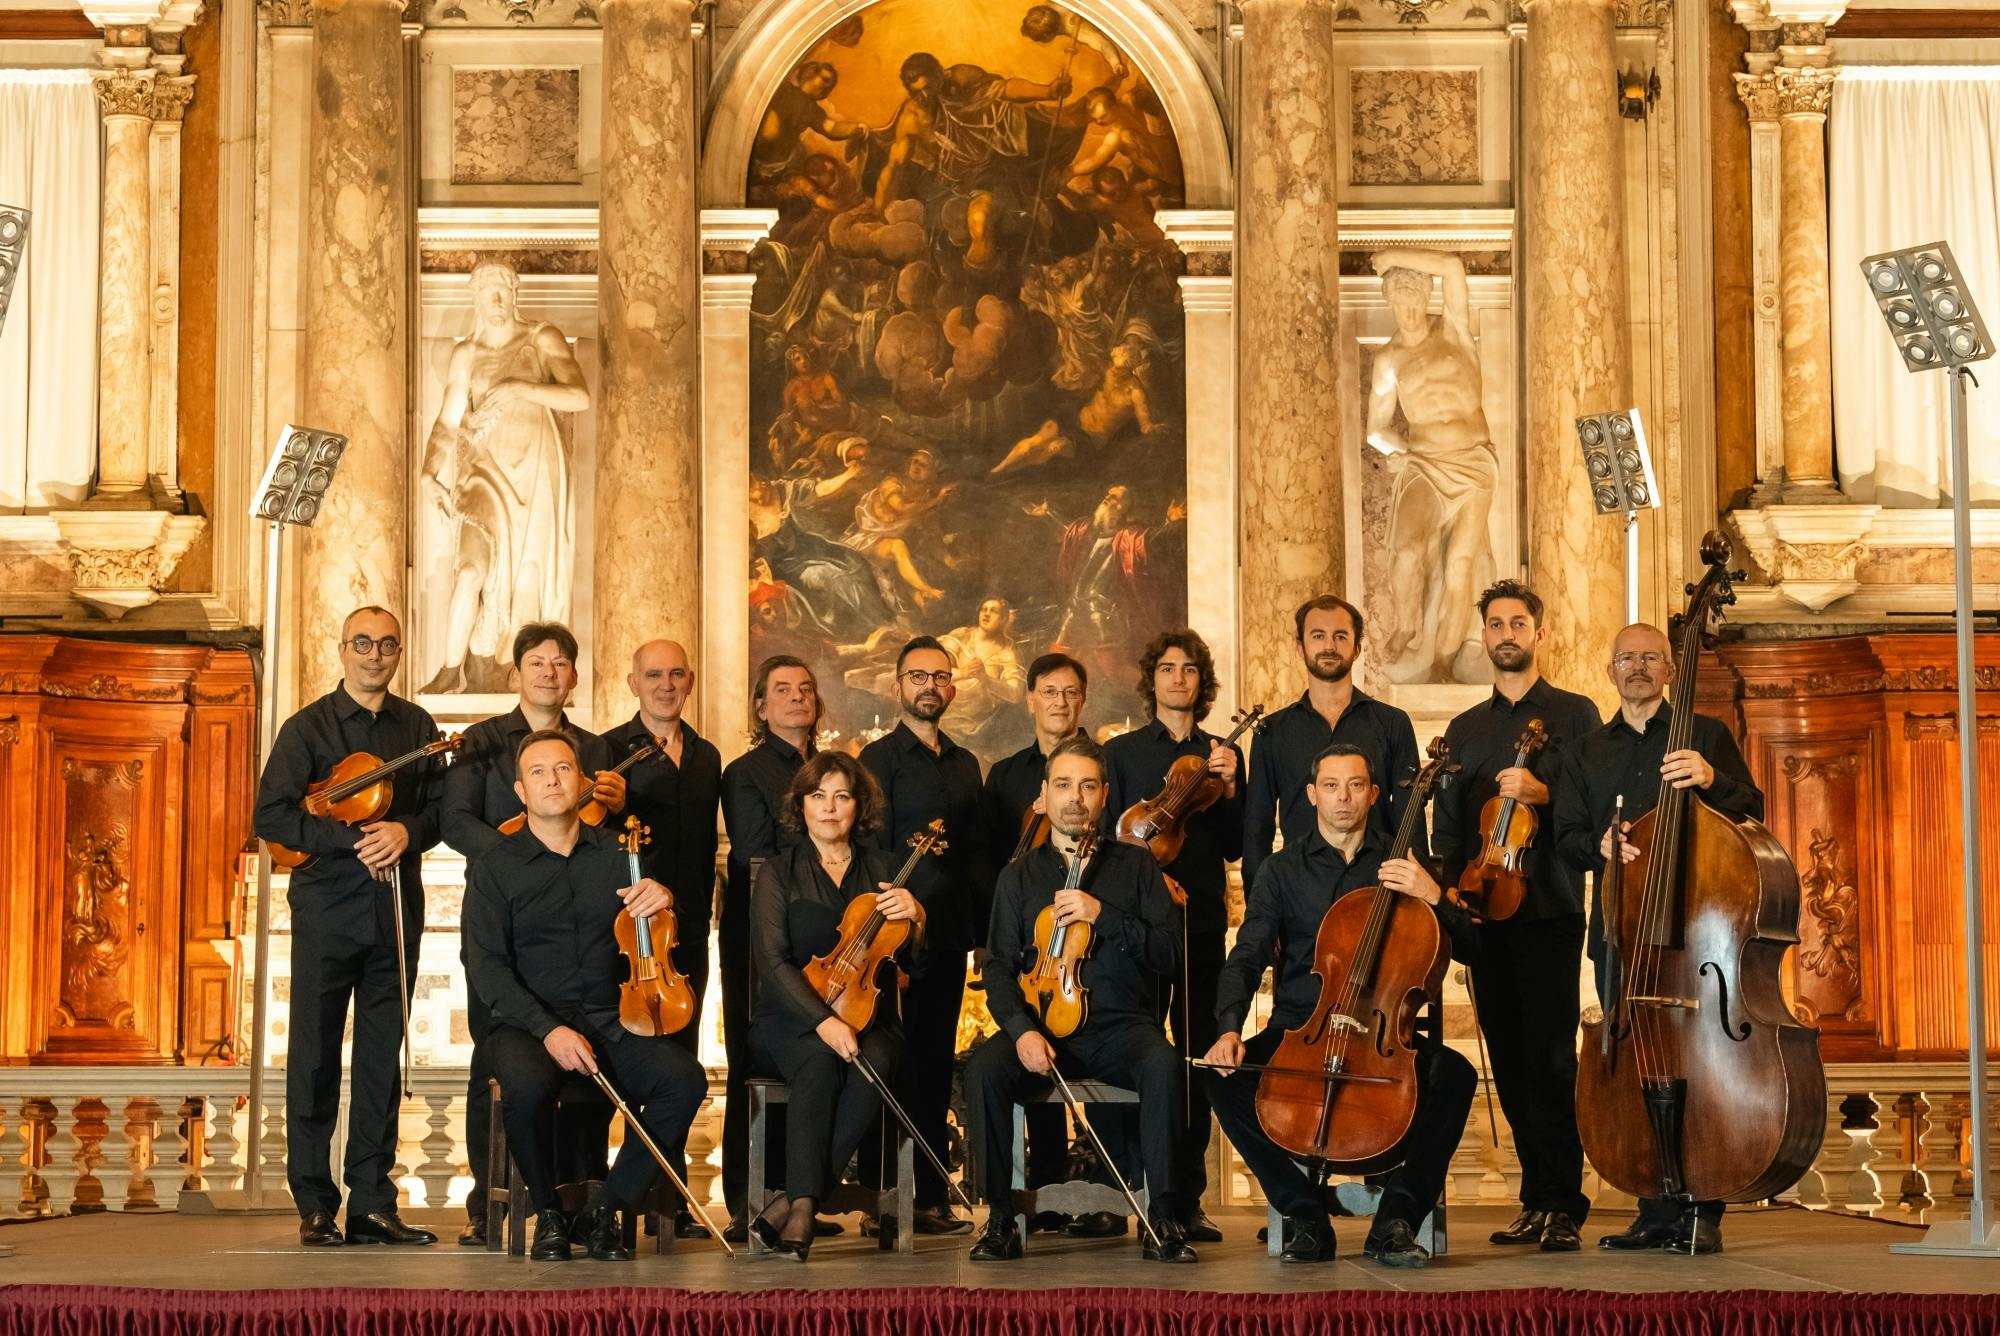 Les concerts des Quatre Saisons de Vivaldi en prime time